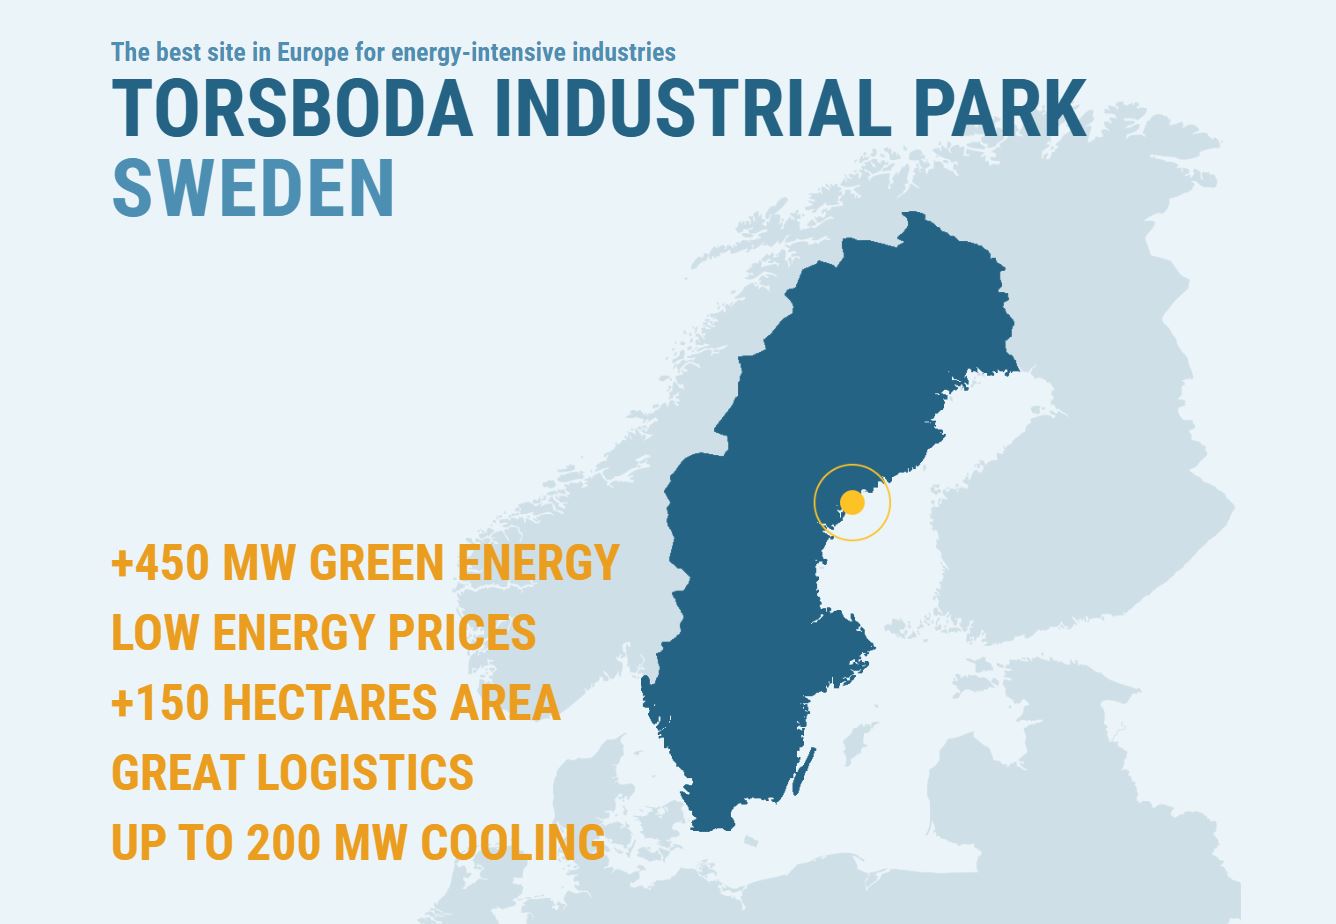 Sverigekarta med placering av Torsboda Industrial Park i mitten vid kusten.